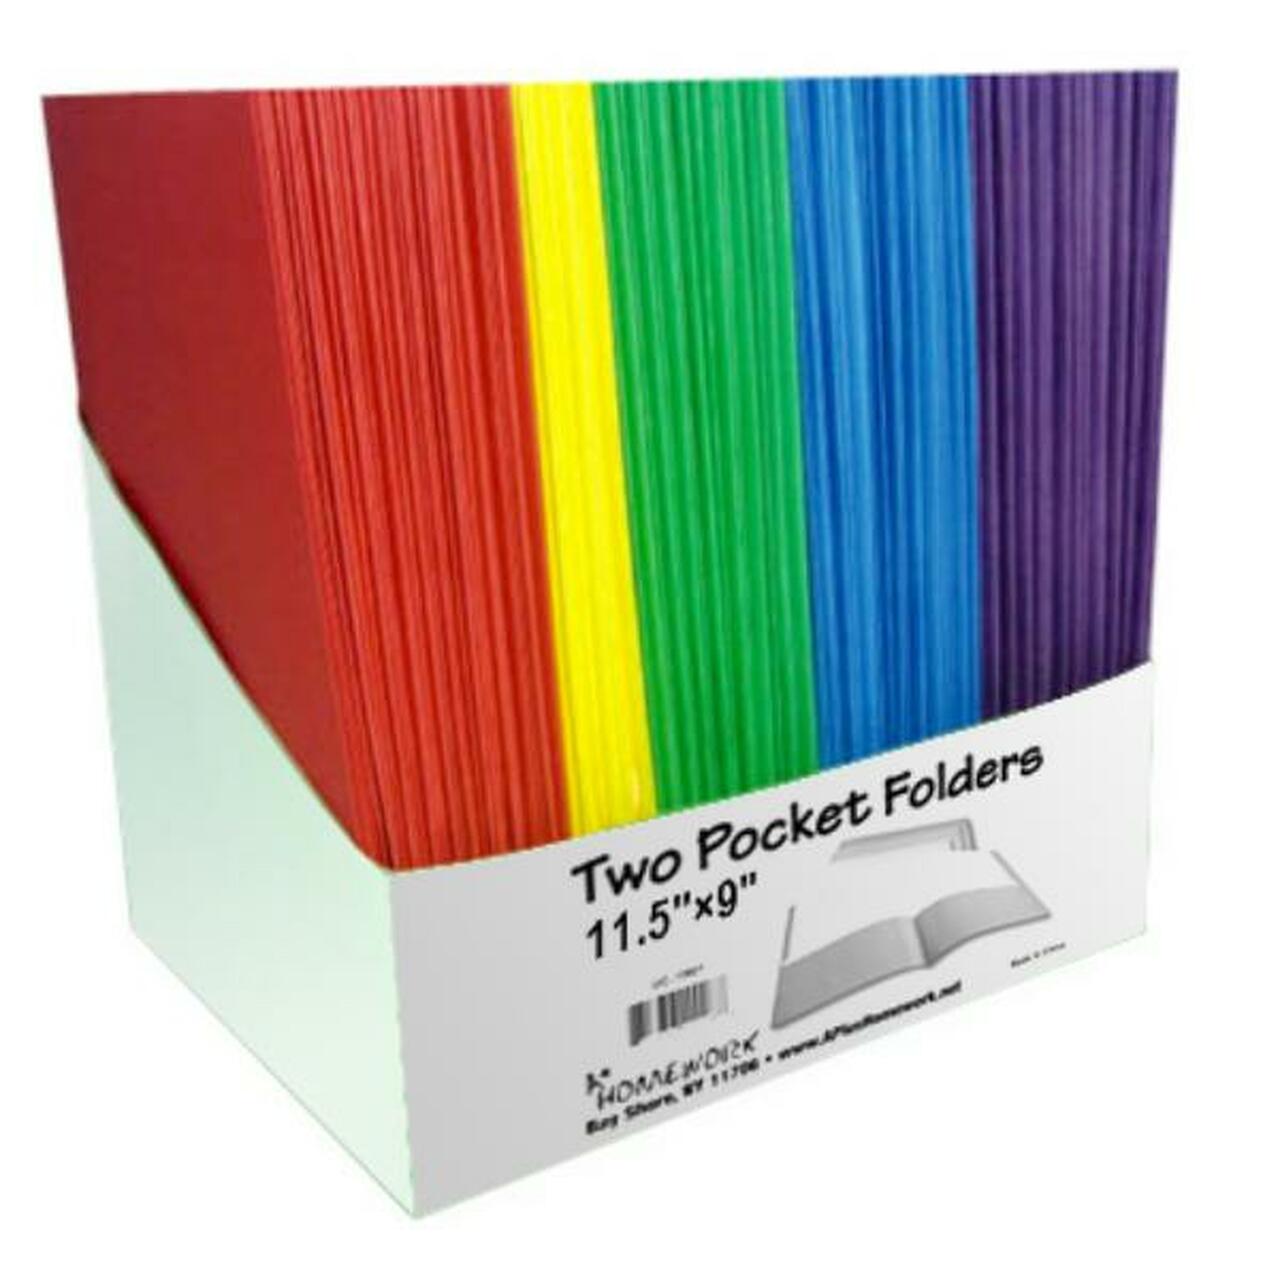 2 Pocket Paper Folder